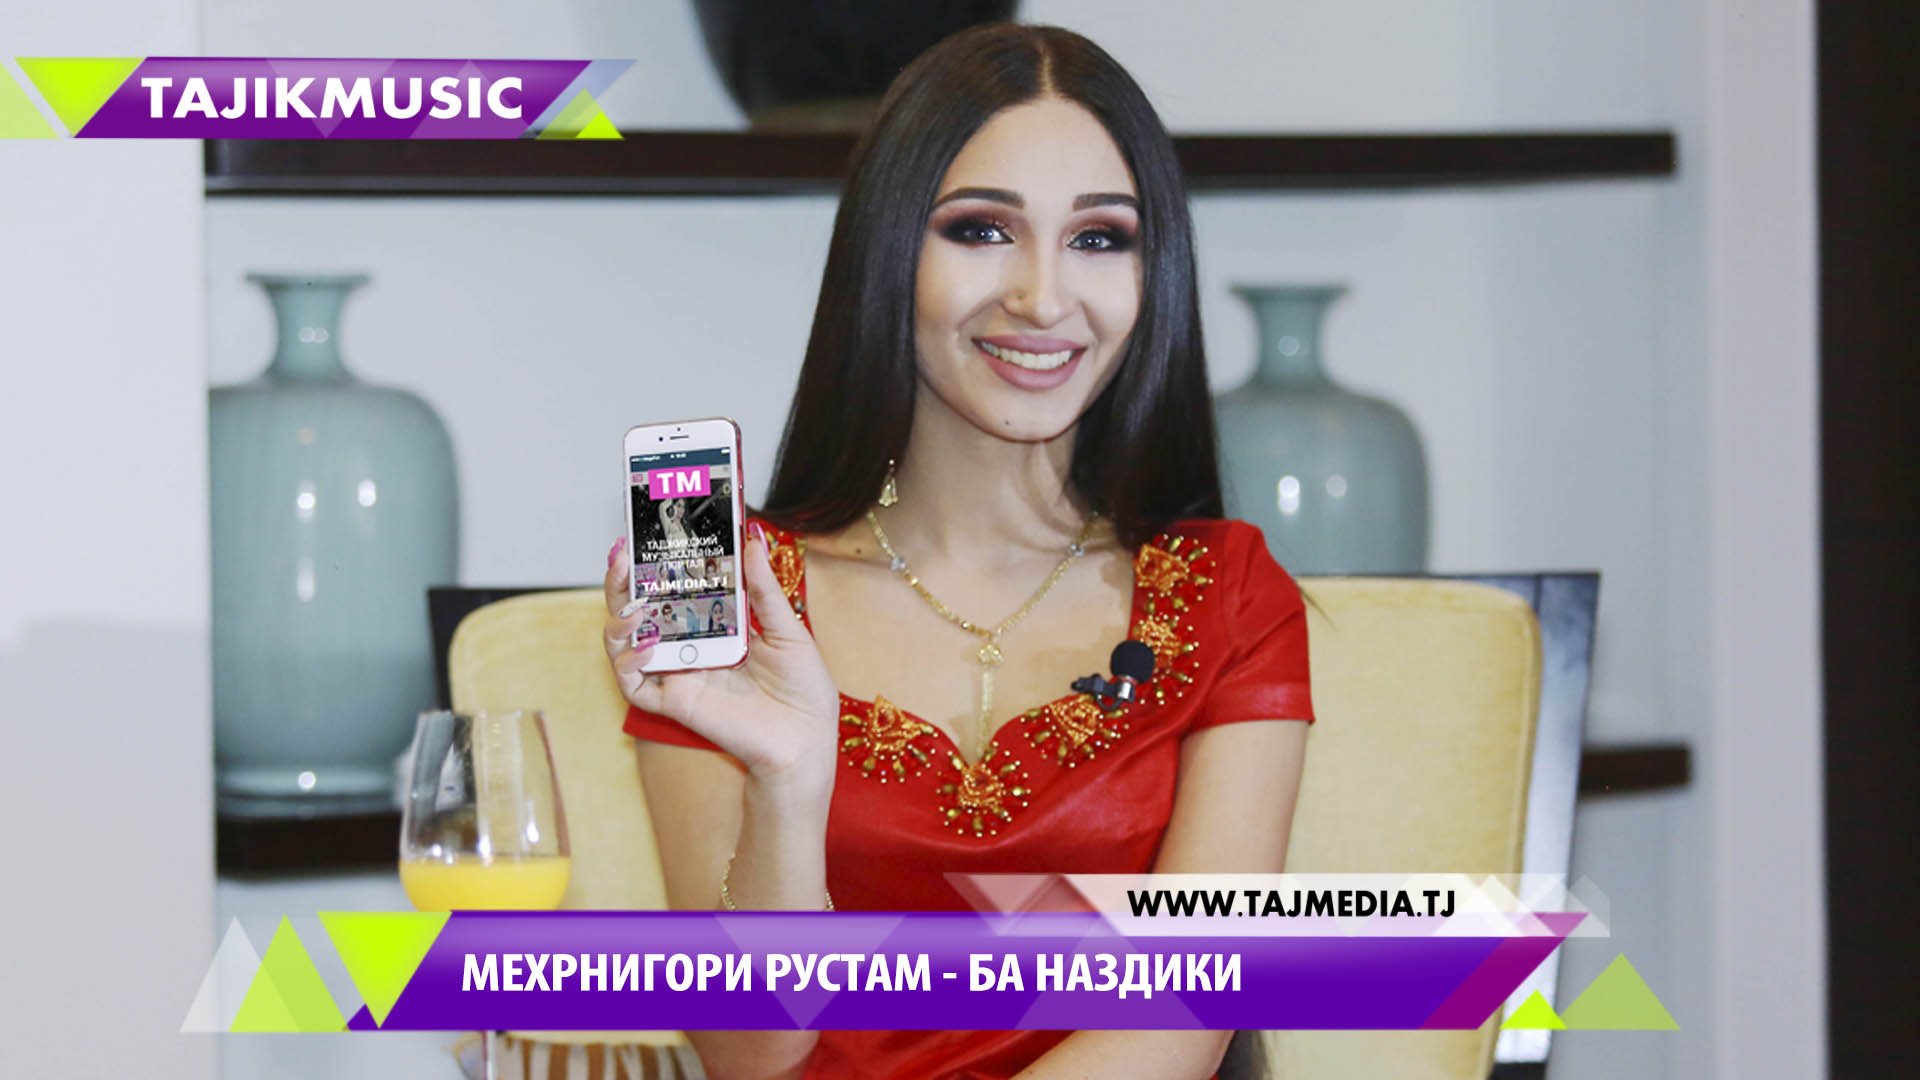 Скачать новинки таджикских песен бесплатно 2017